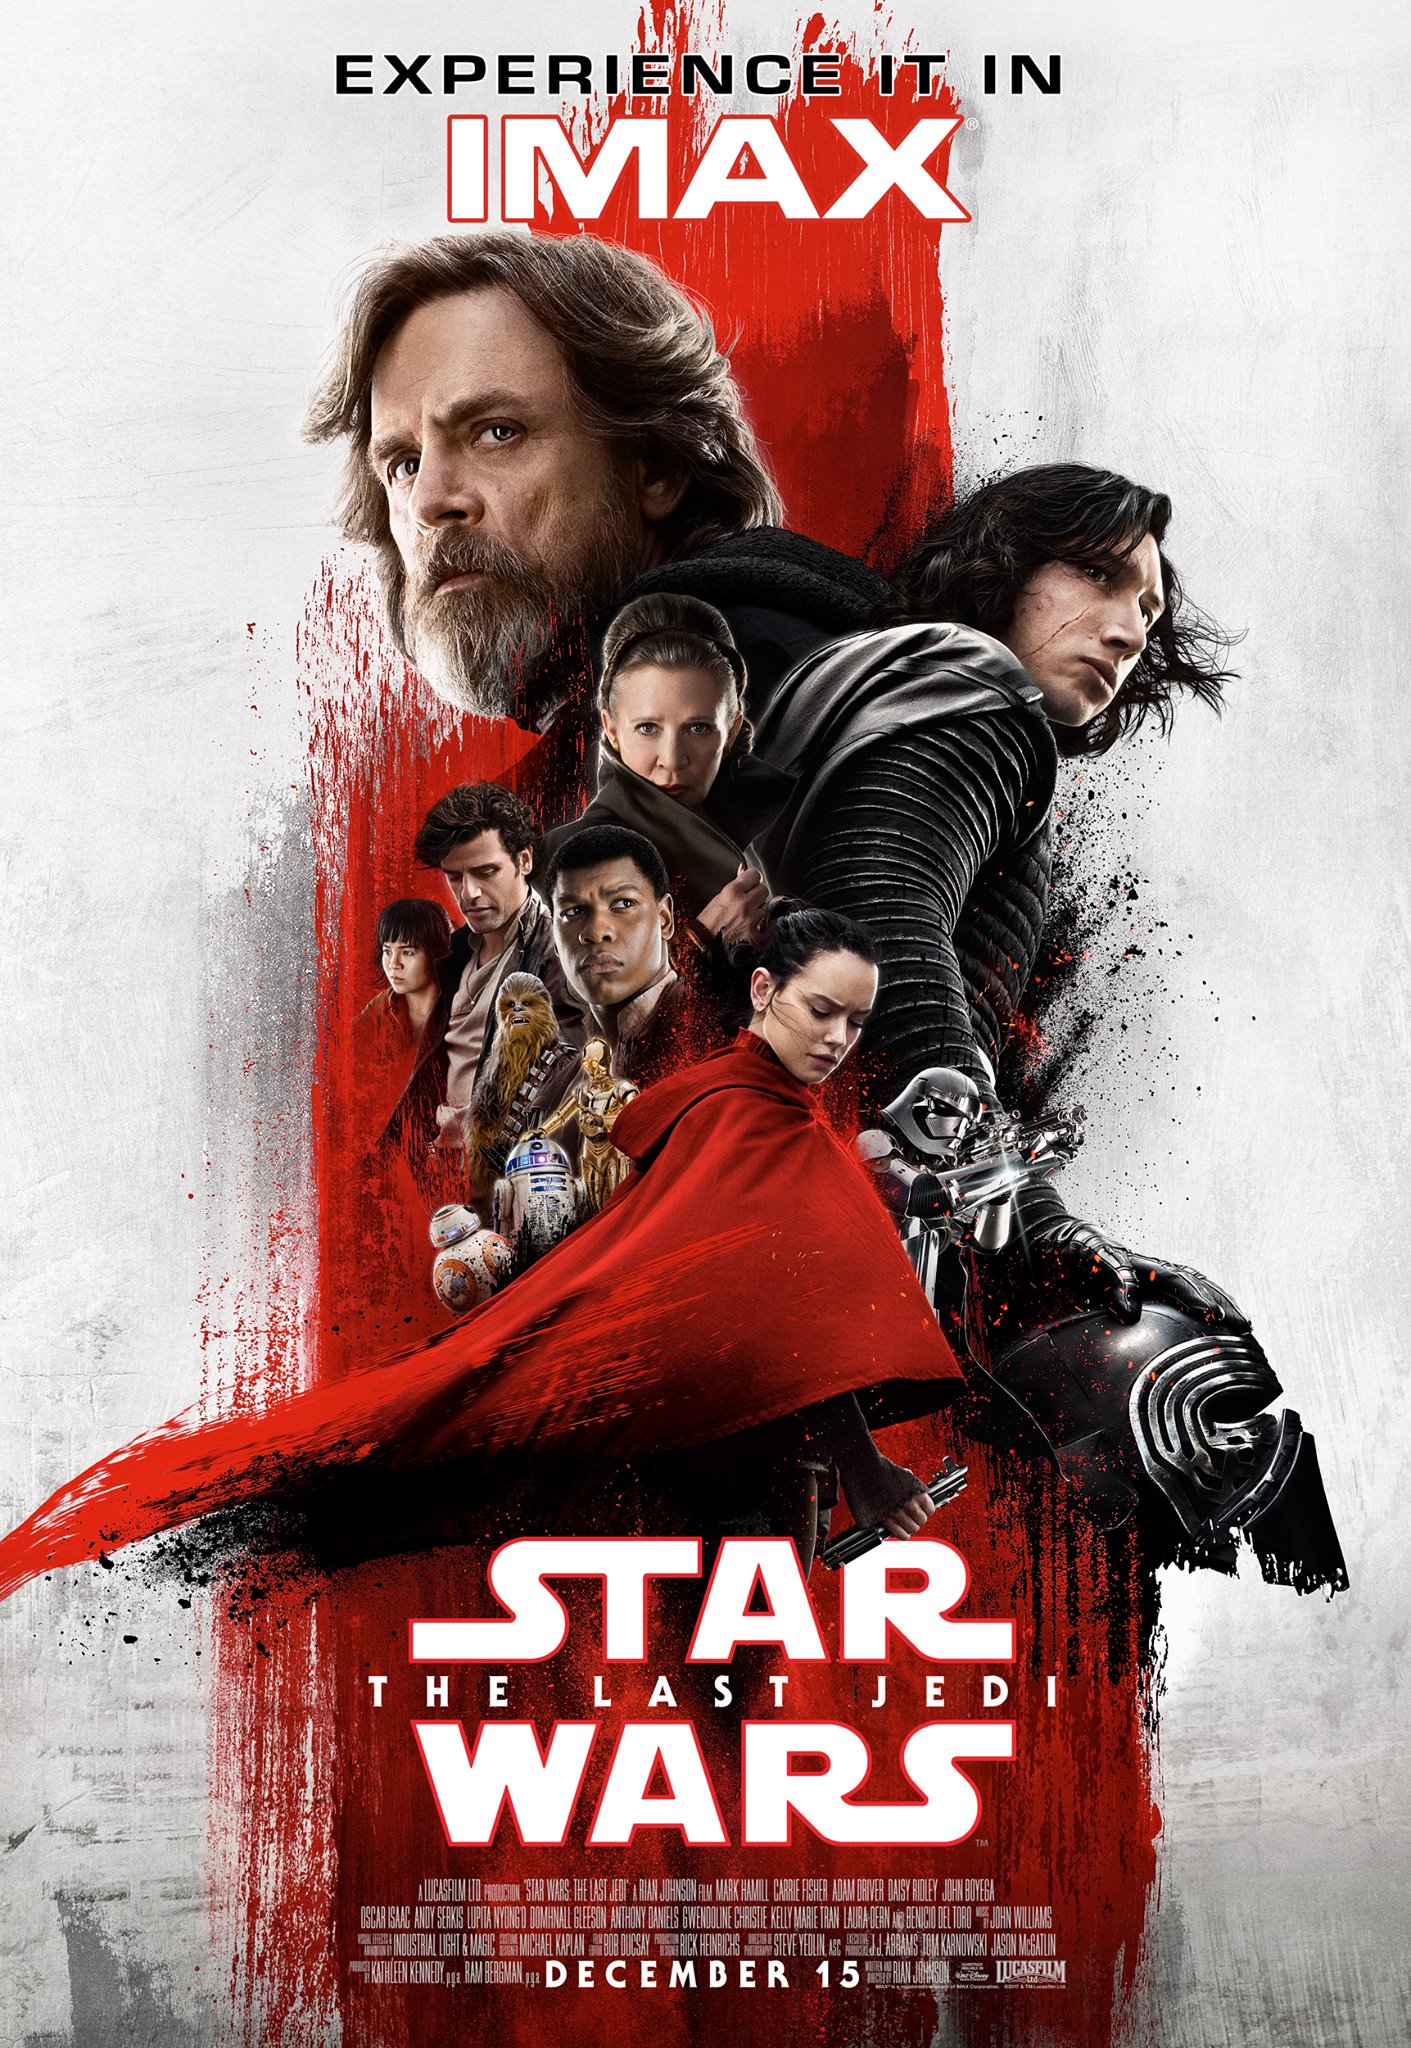 Luke e Kylo Ren são destaques em um novo pôster em IMAX de Star Wars: Os Últimos Jedi!